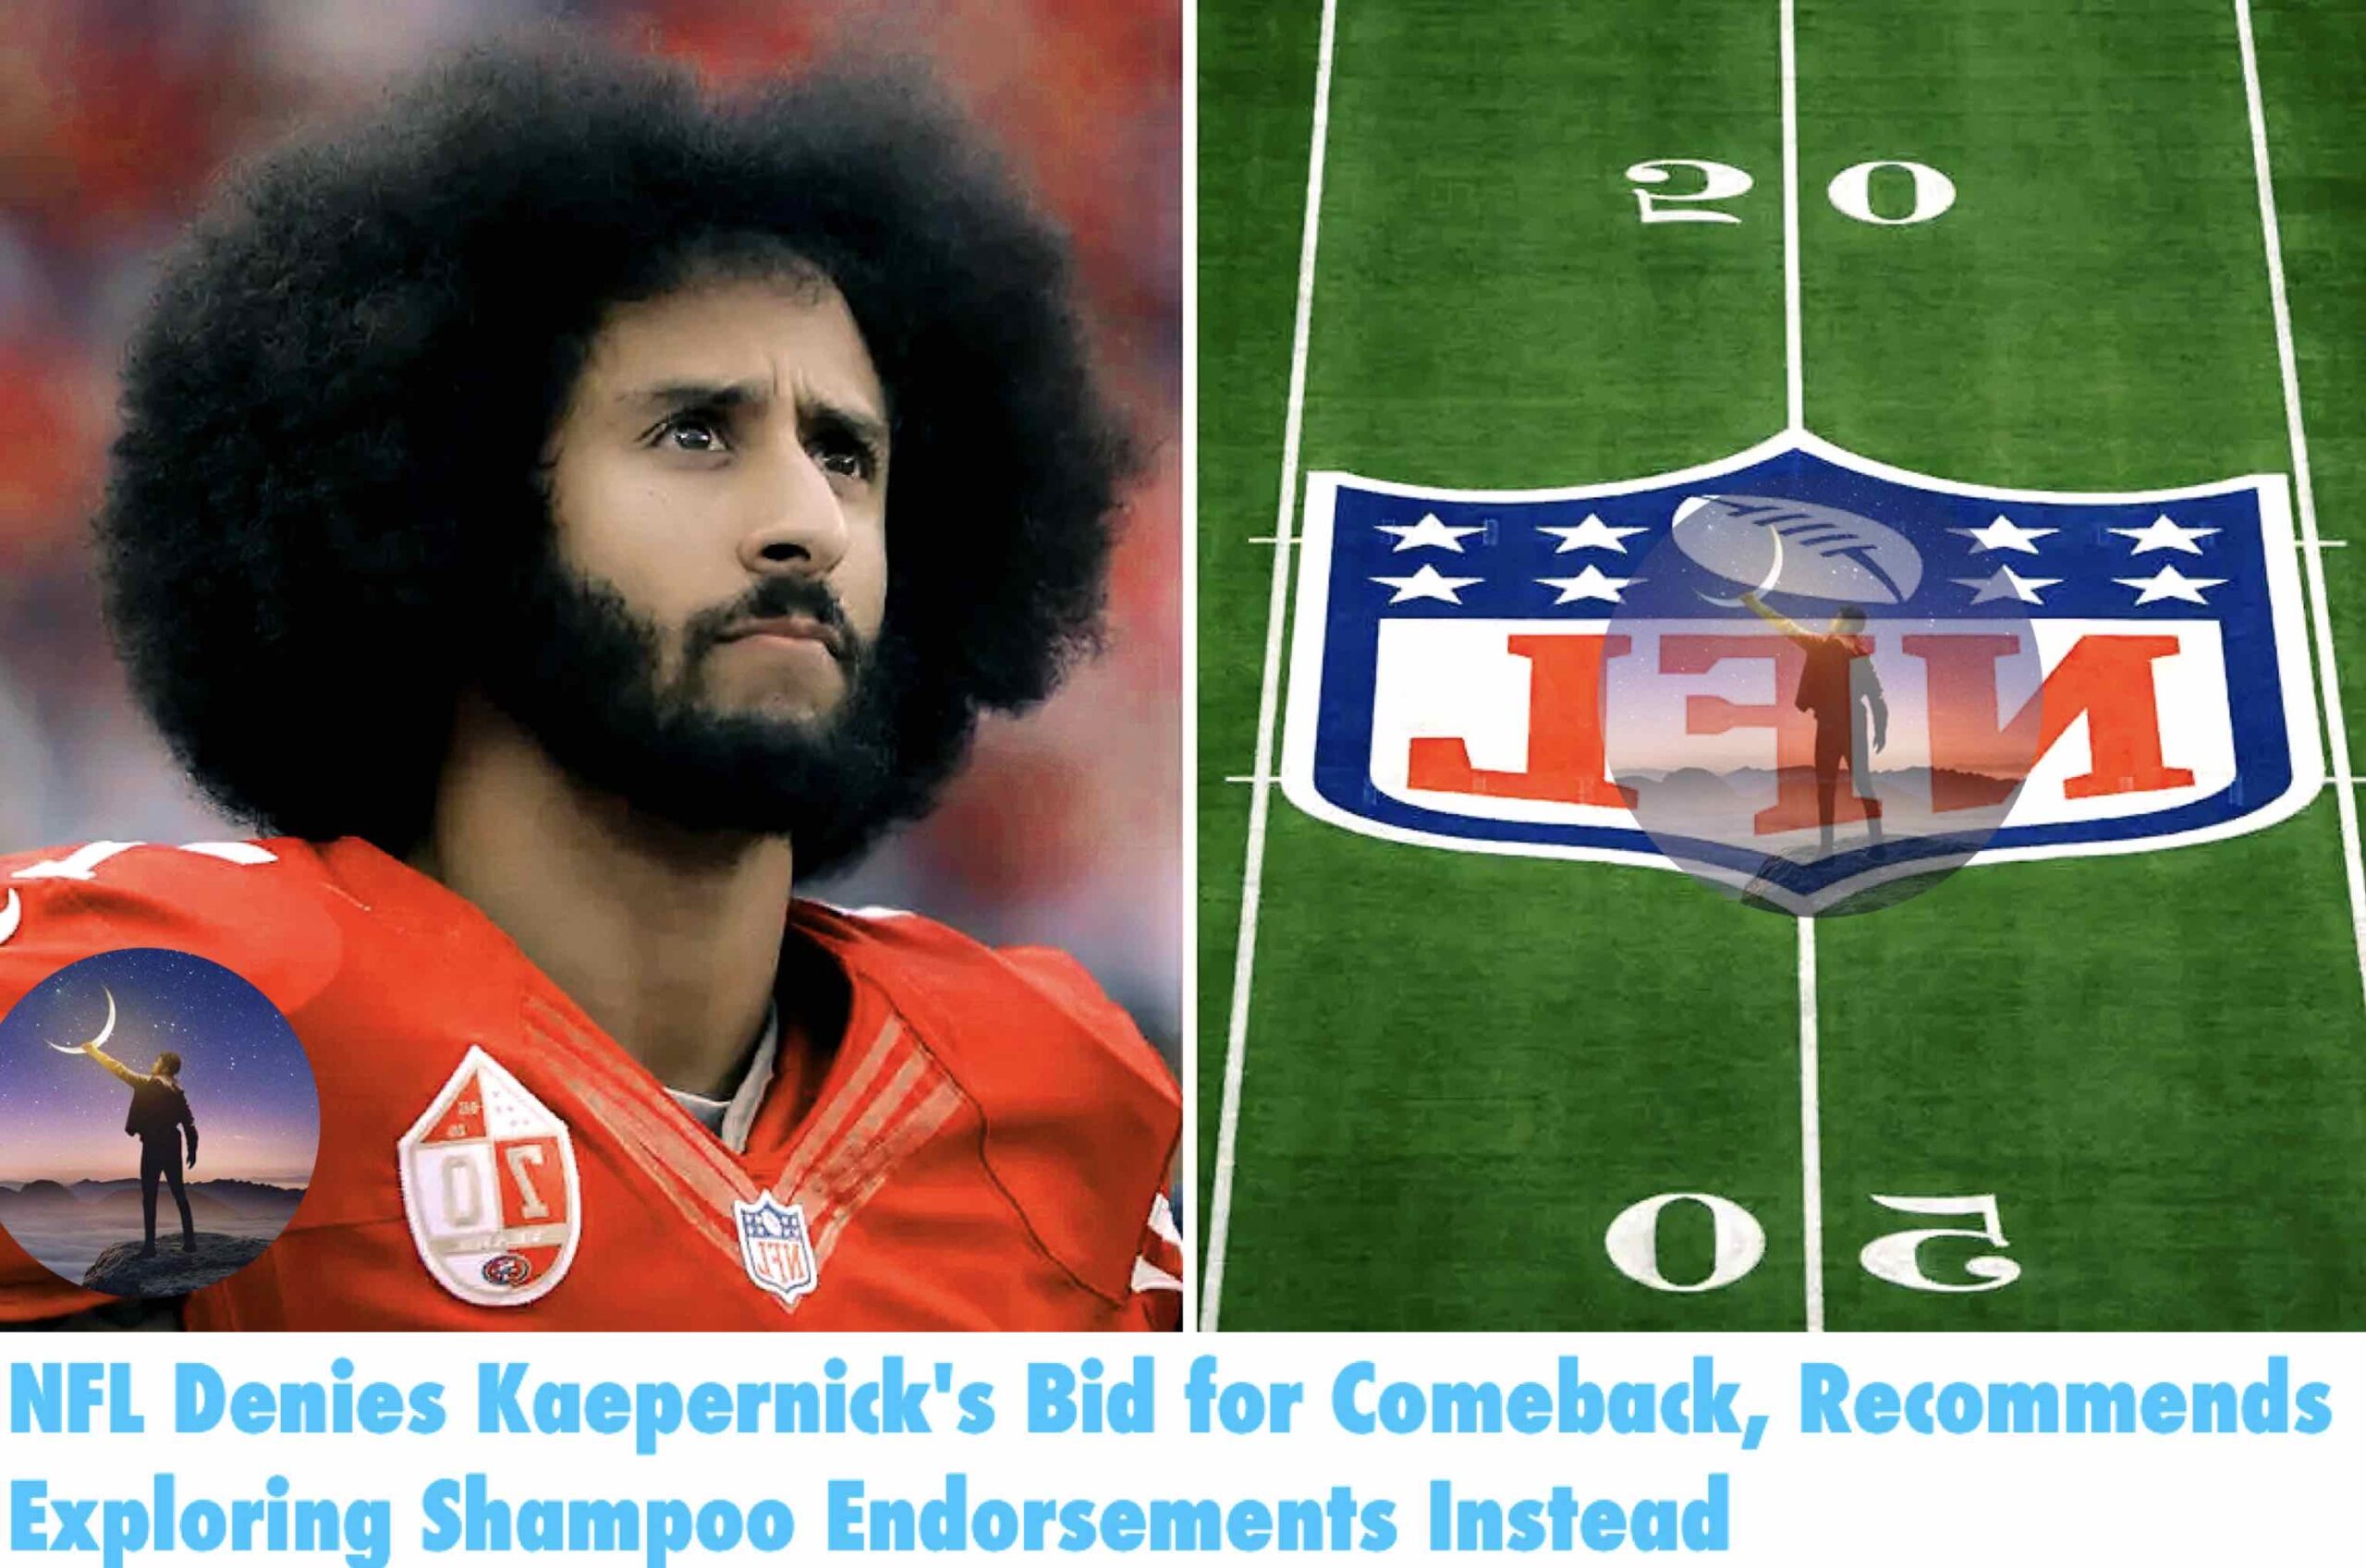 NFL Denies Kaepernick’s Bid for Comeback, Recommends Exploring Shampoo Endorsements Instead